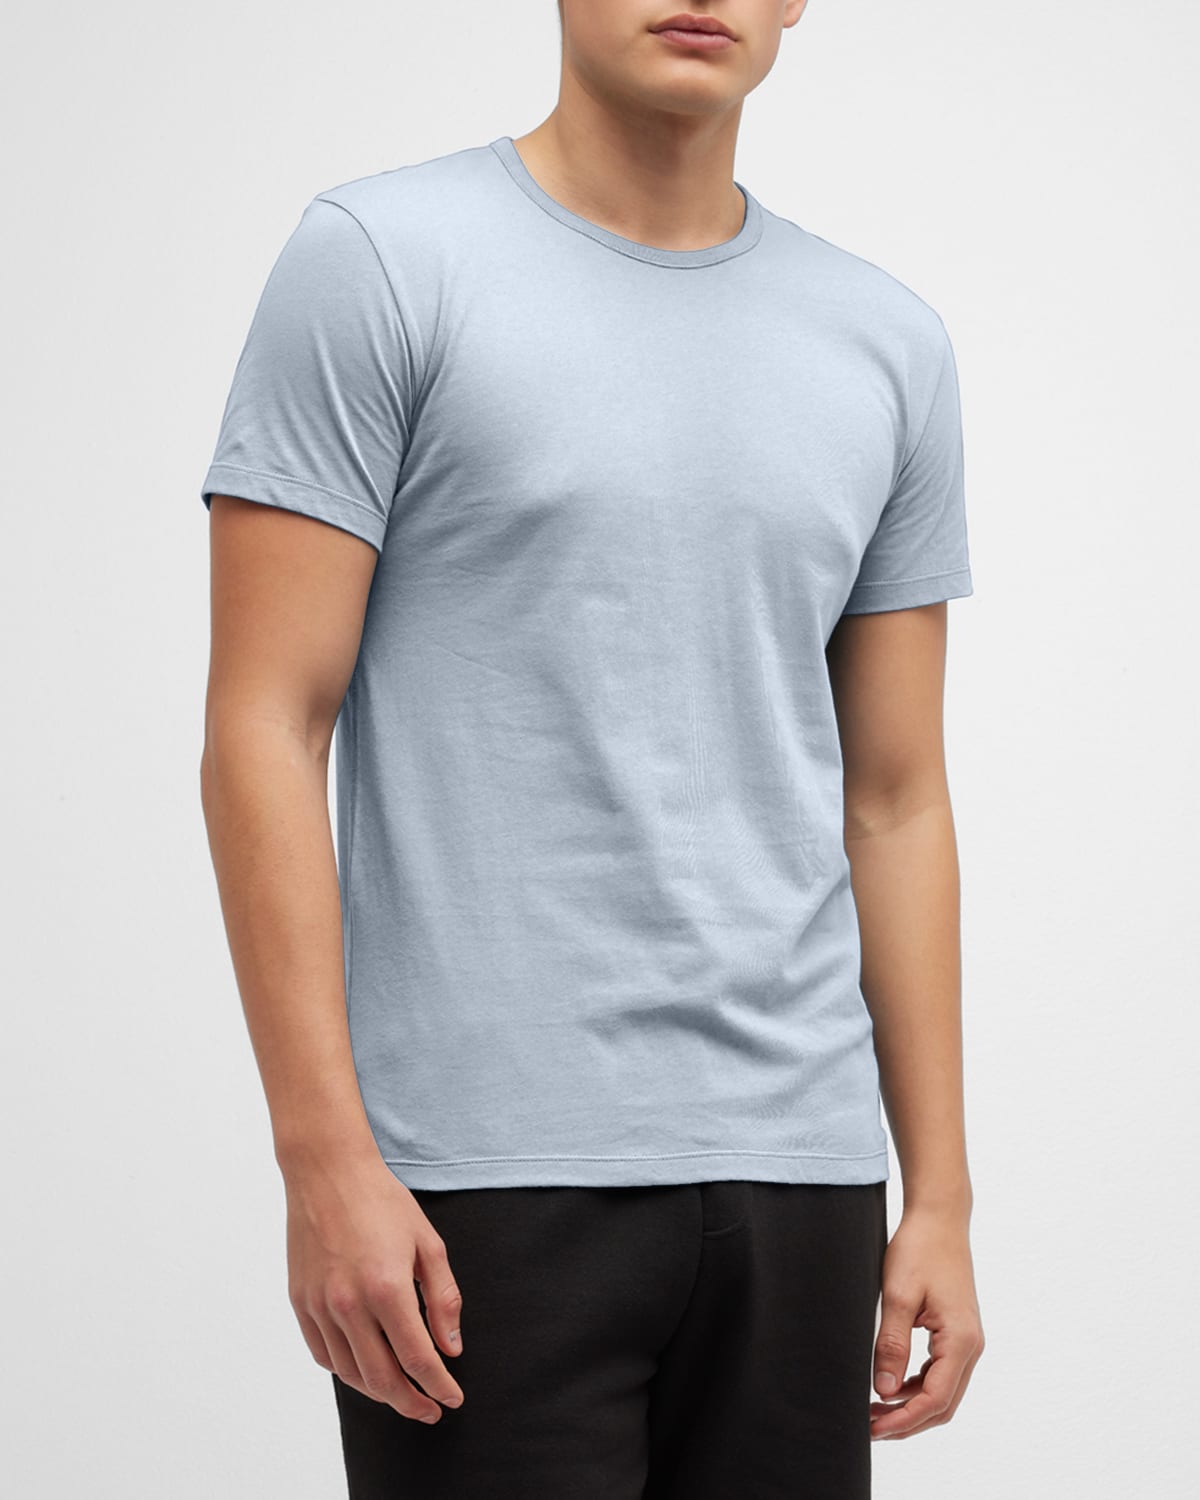 Paul Smith Men's Cotton Crewneck T-shirt In Light Blue